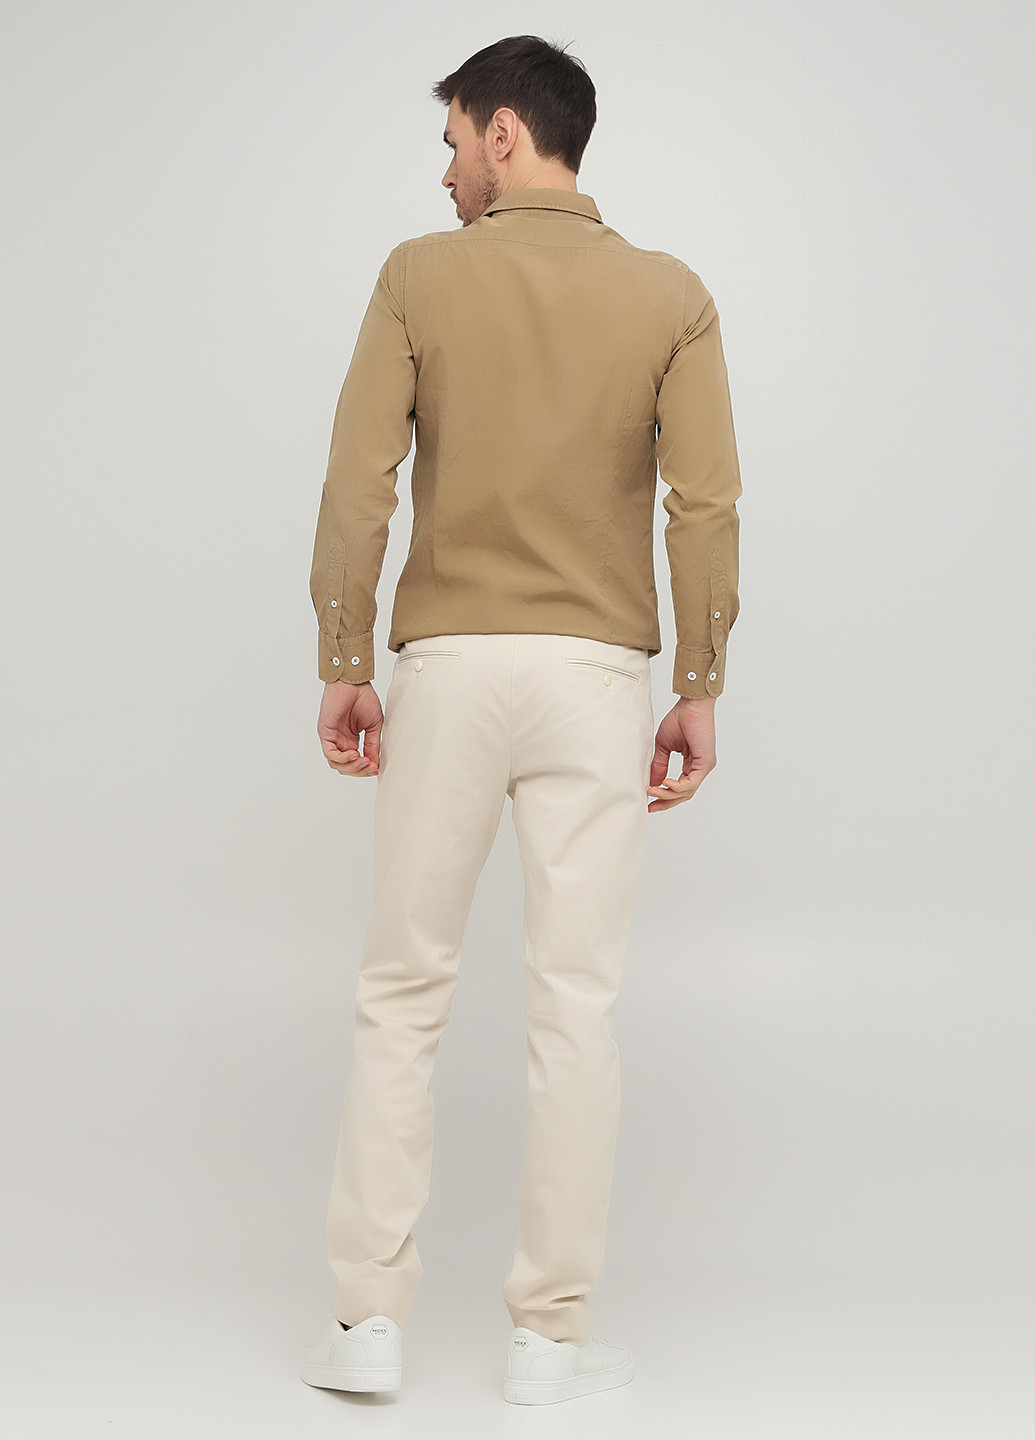 Светло-бежевые кэжуал демисезонные чиносы брюки Massimo Dutti